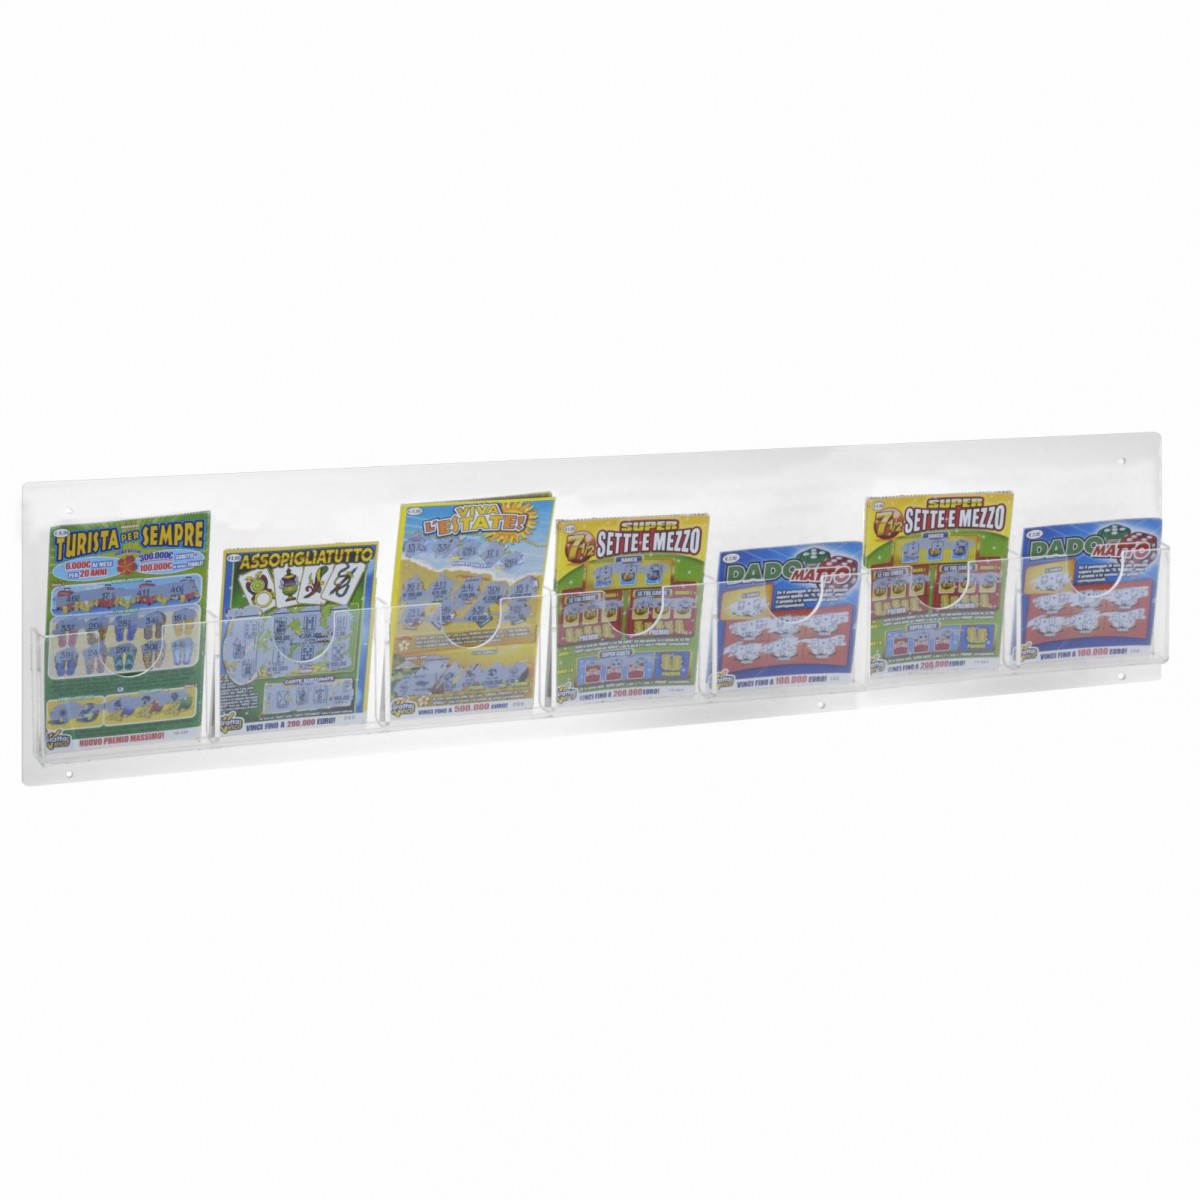 E-493 - Espositore schedine e gratta e vinci da parete in plexiglass trasparente